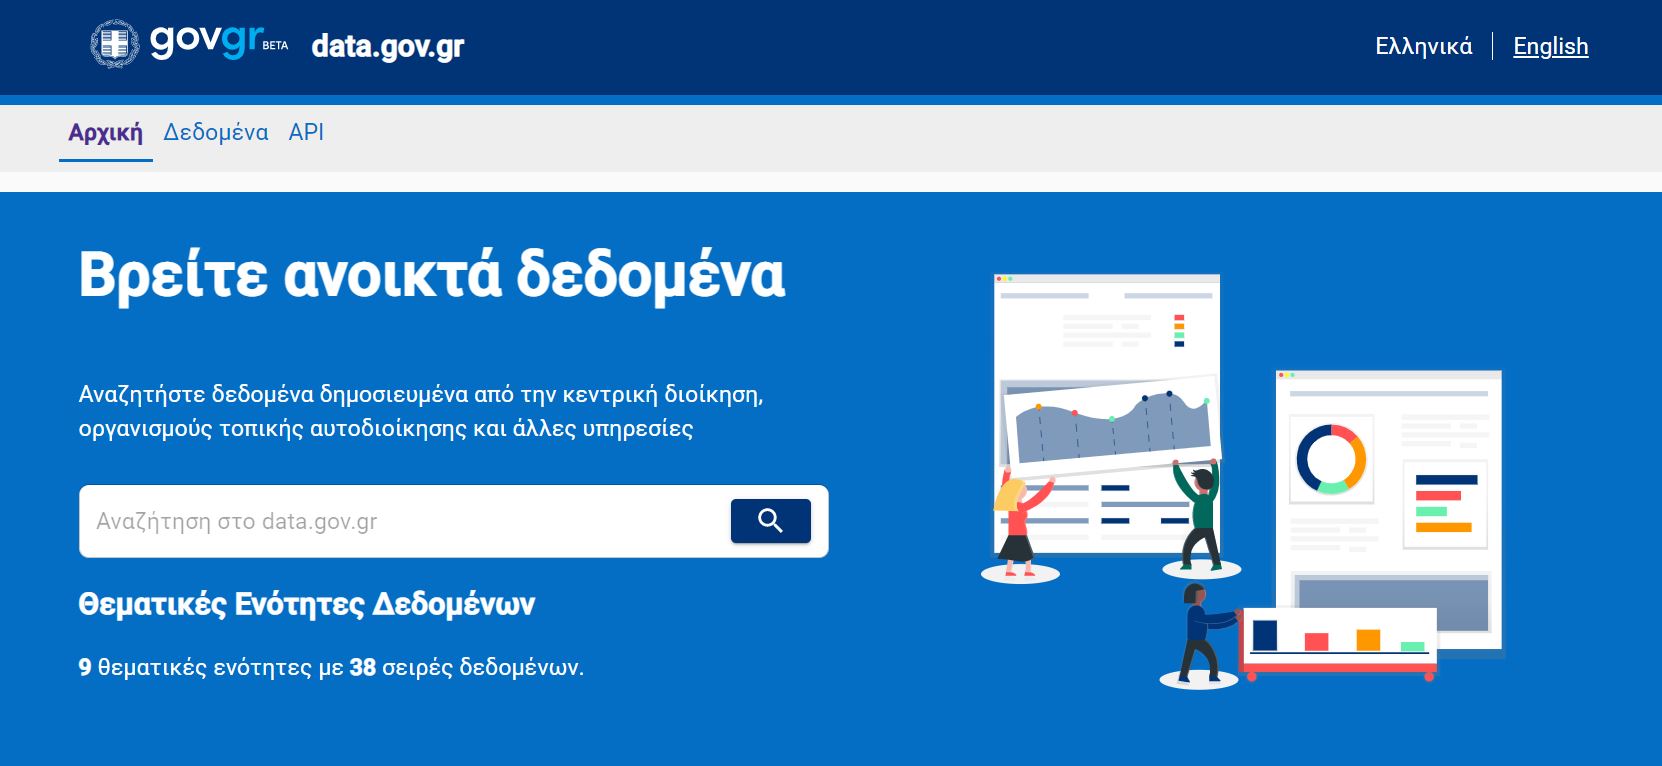 More information about "Σε λειτουργία η πλατφόρμα παροχής ανοιχτών δεδομένων data.gov.gr"